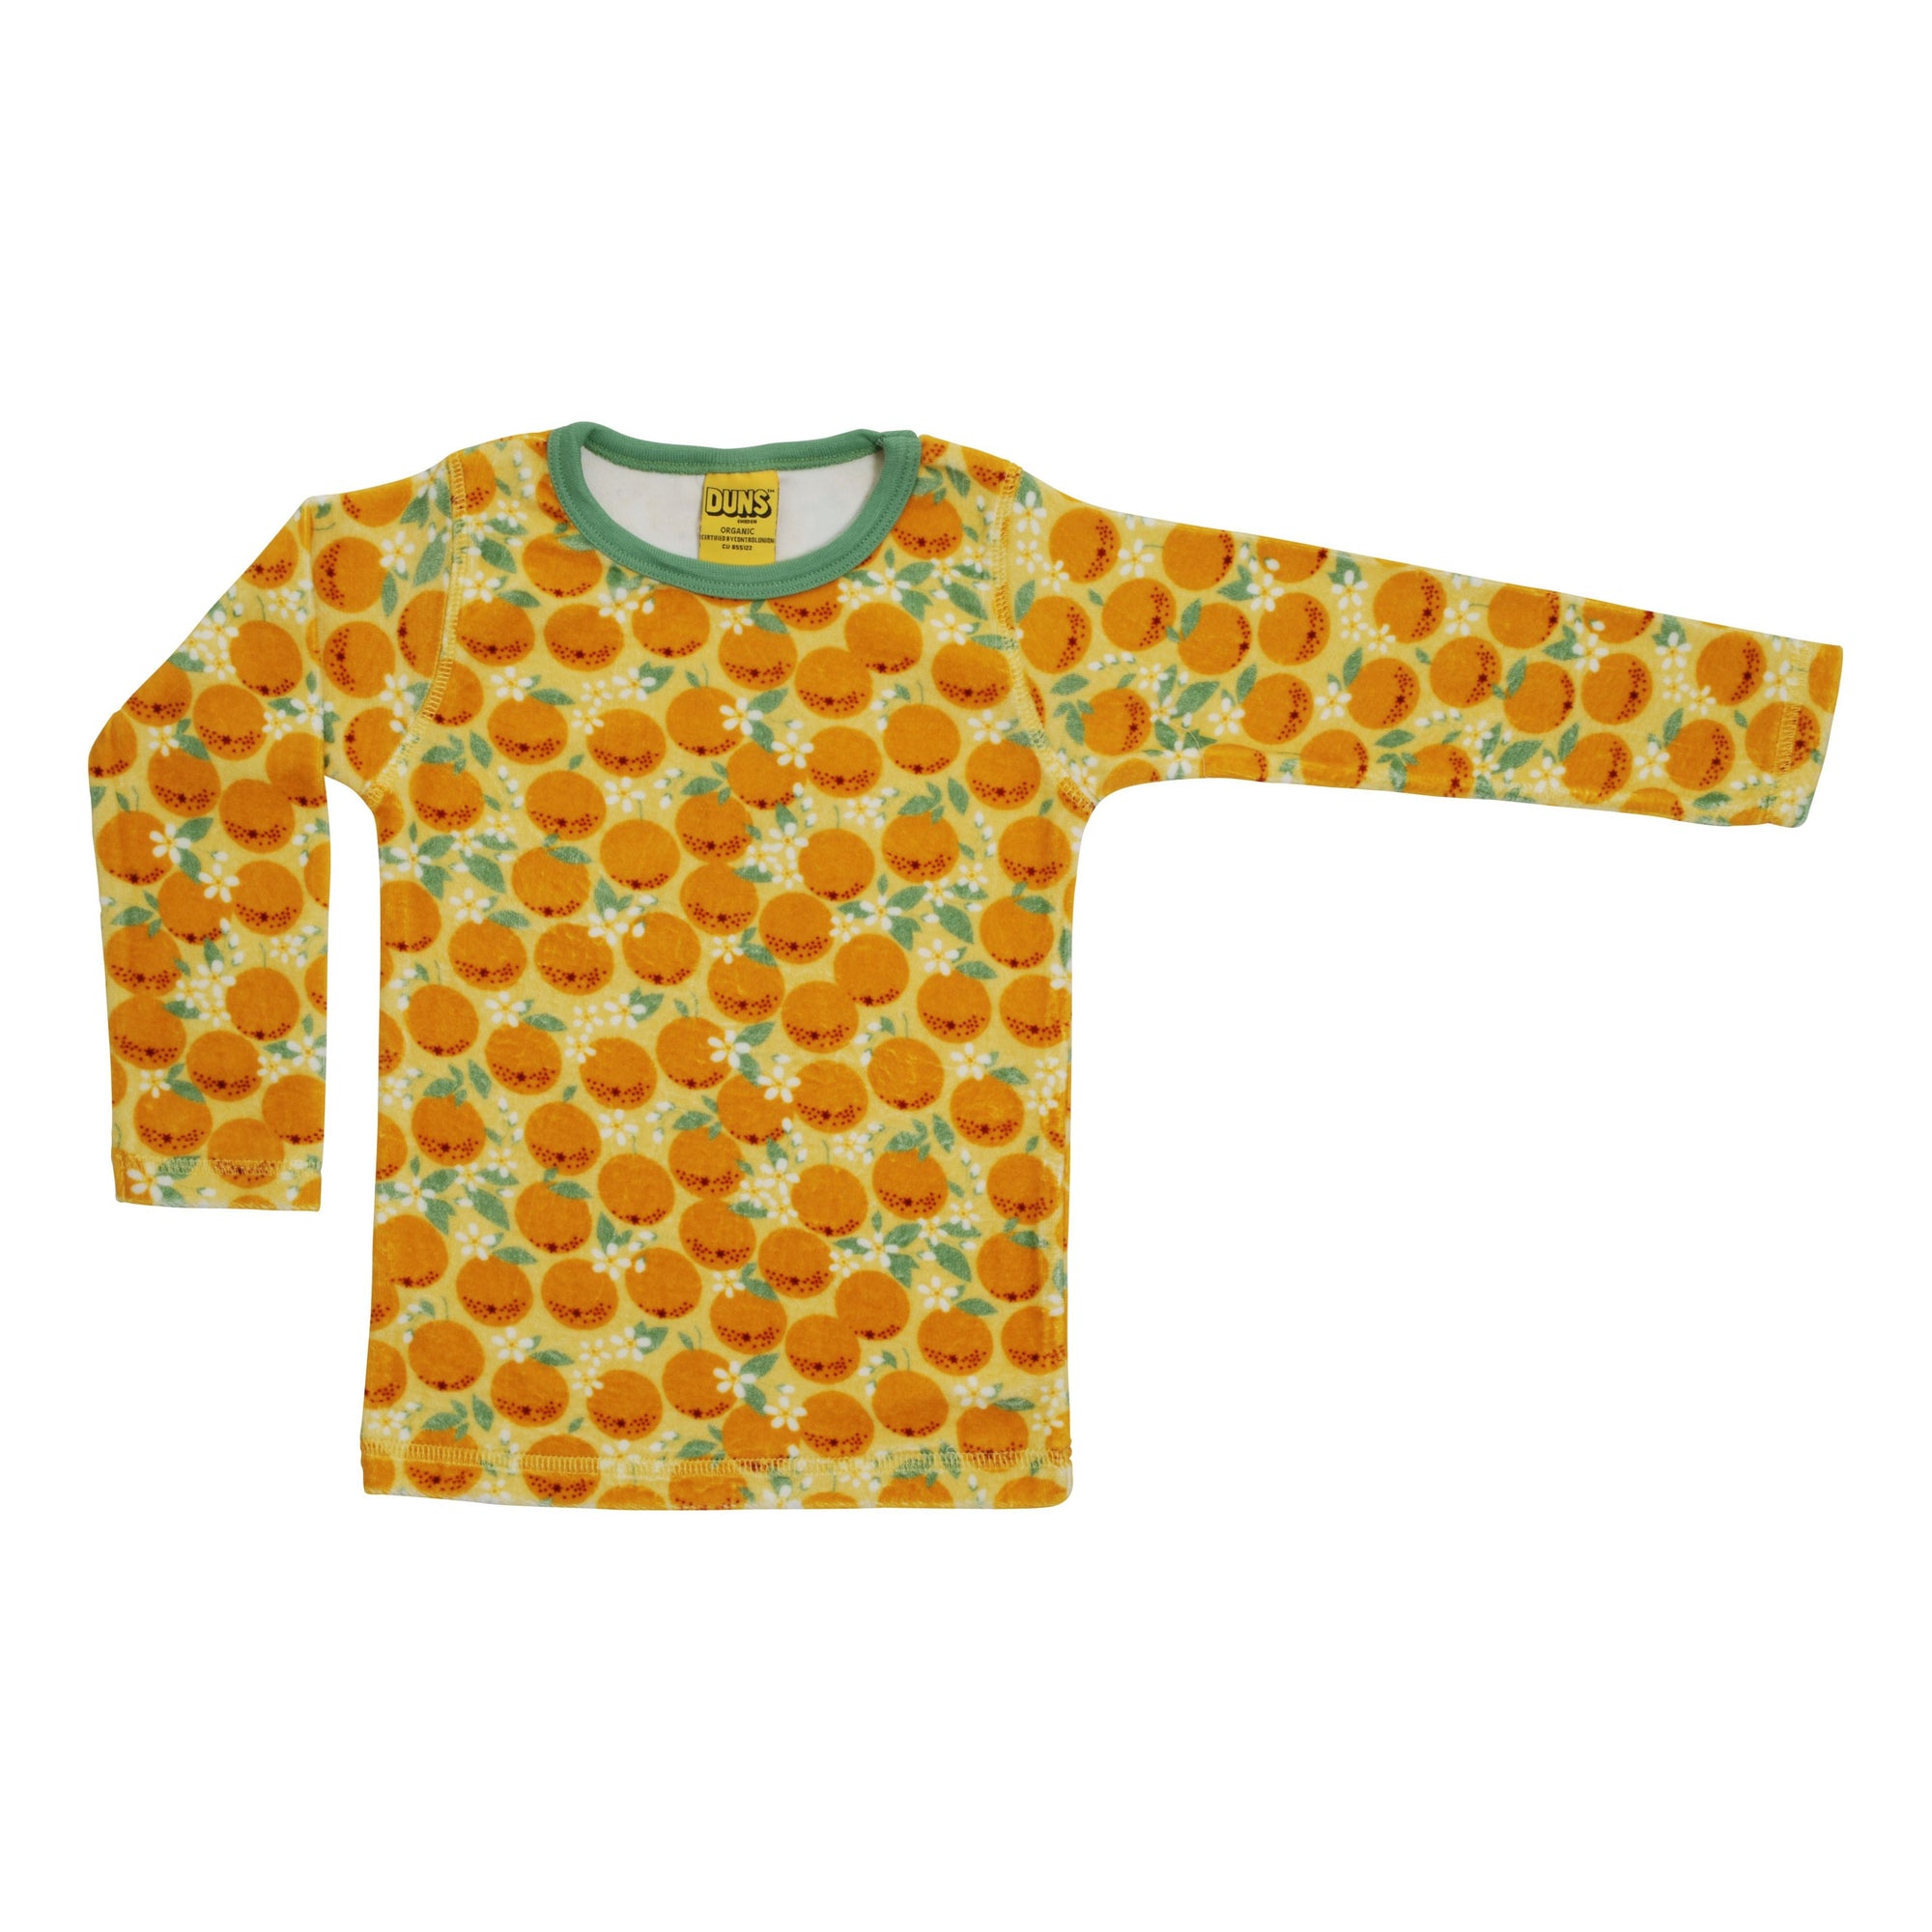 Oranges - Yellow Velour Long Sleeve Shirt-Duns Sweden-Modern Rascals